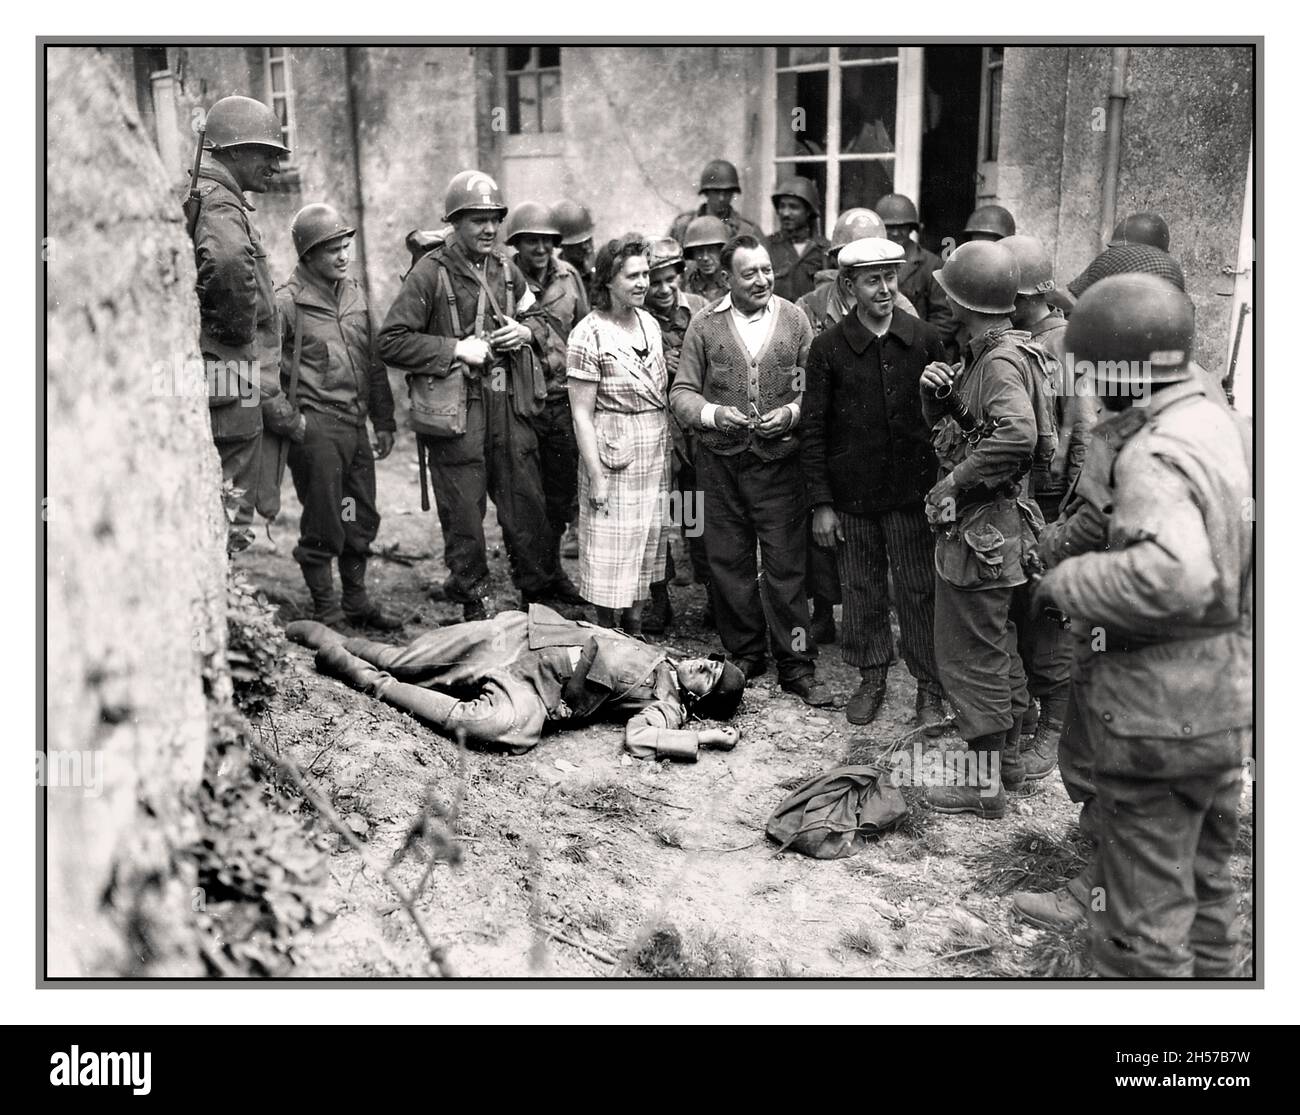 D-Day Advance e liberazione francese in Normandia soldati americani con un gruppo liberato di residenti locali francesi della Normandia con un cadavere raccapricciante di un soldato nazista tedesco Wehrmacht 1944 Normandia Francia Foto Stock